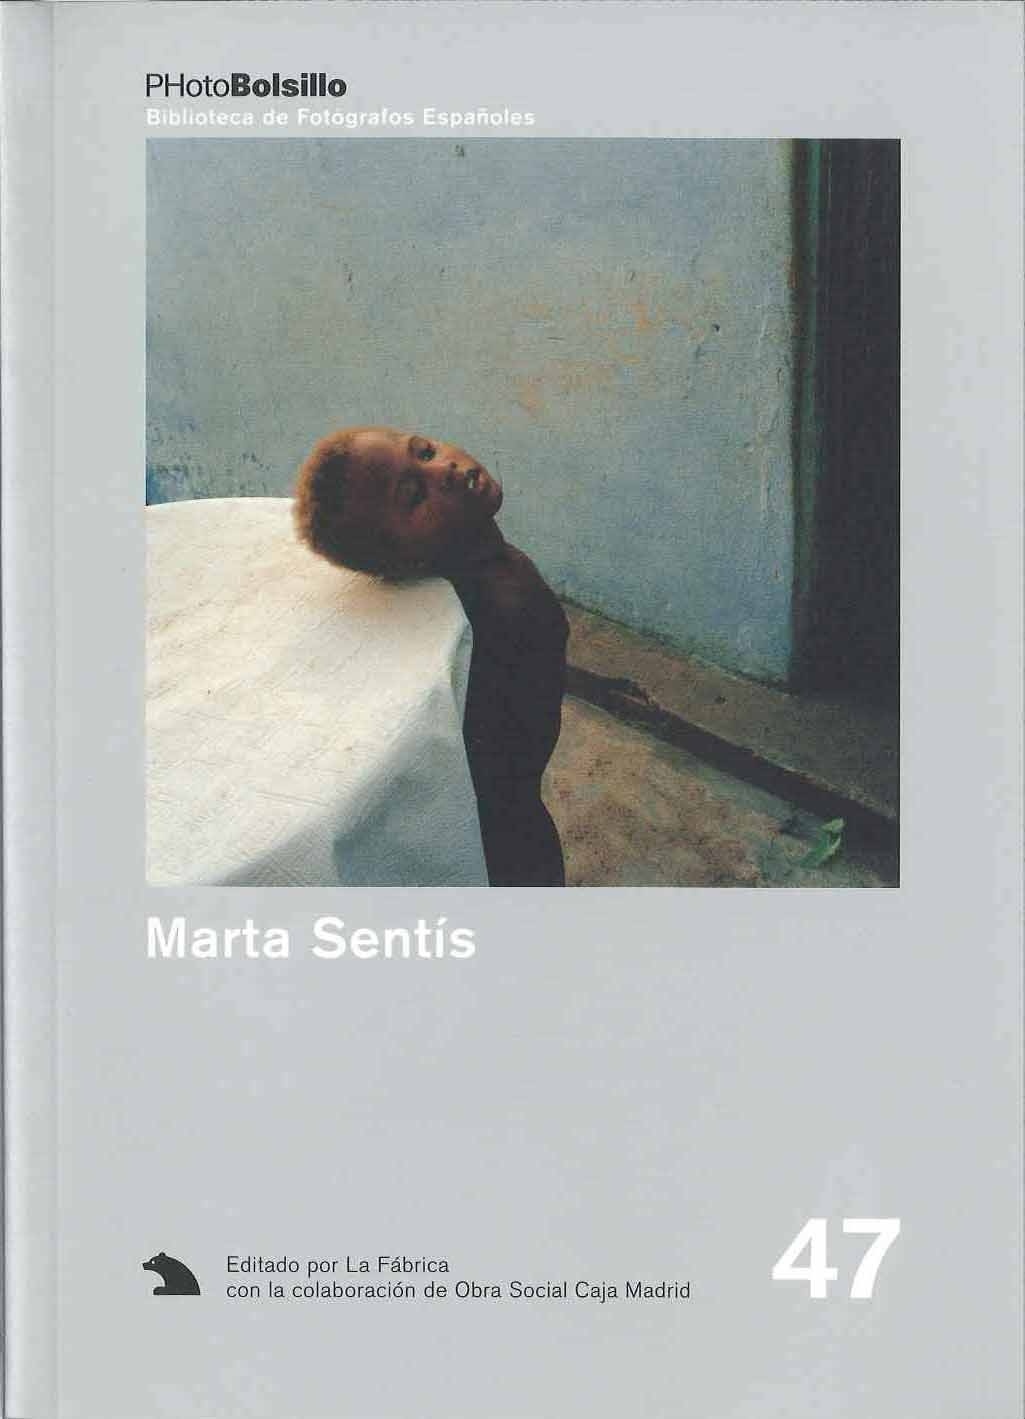 Marta Sentis